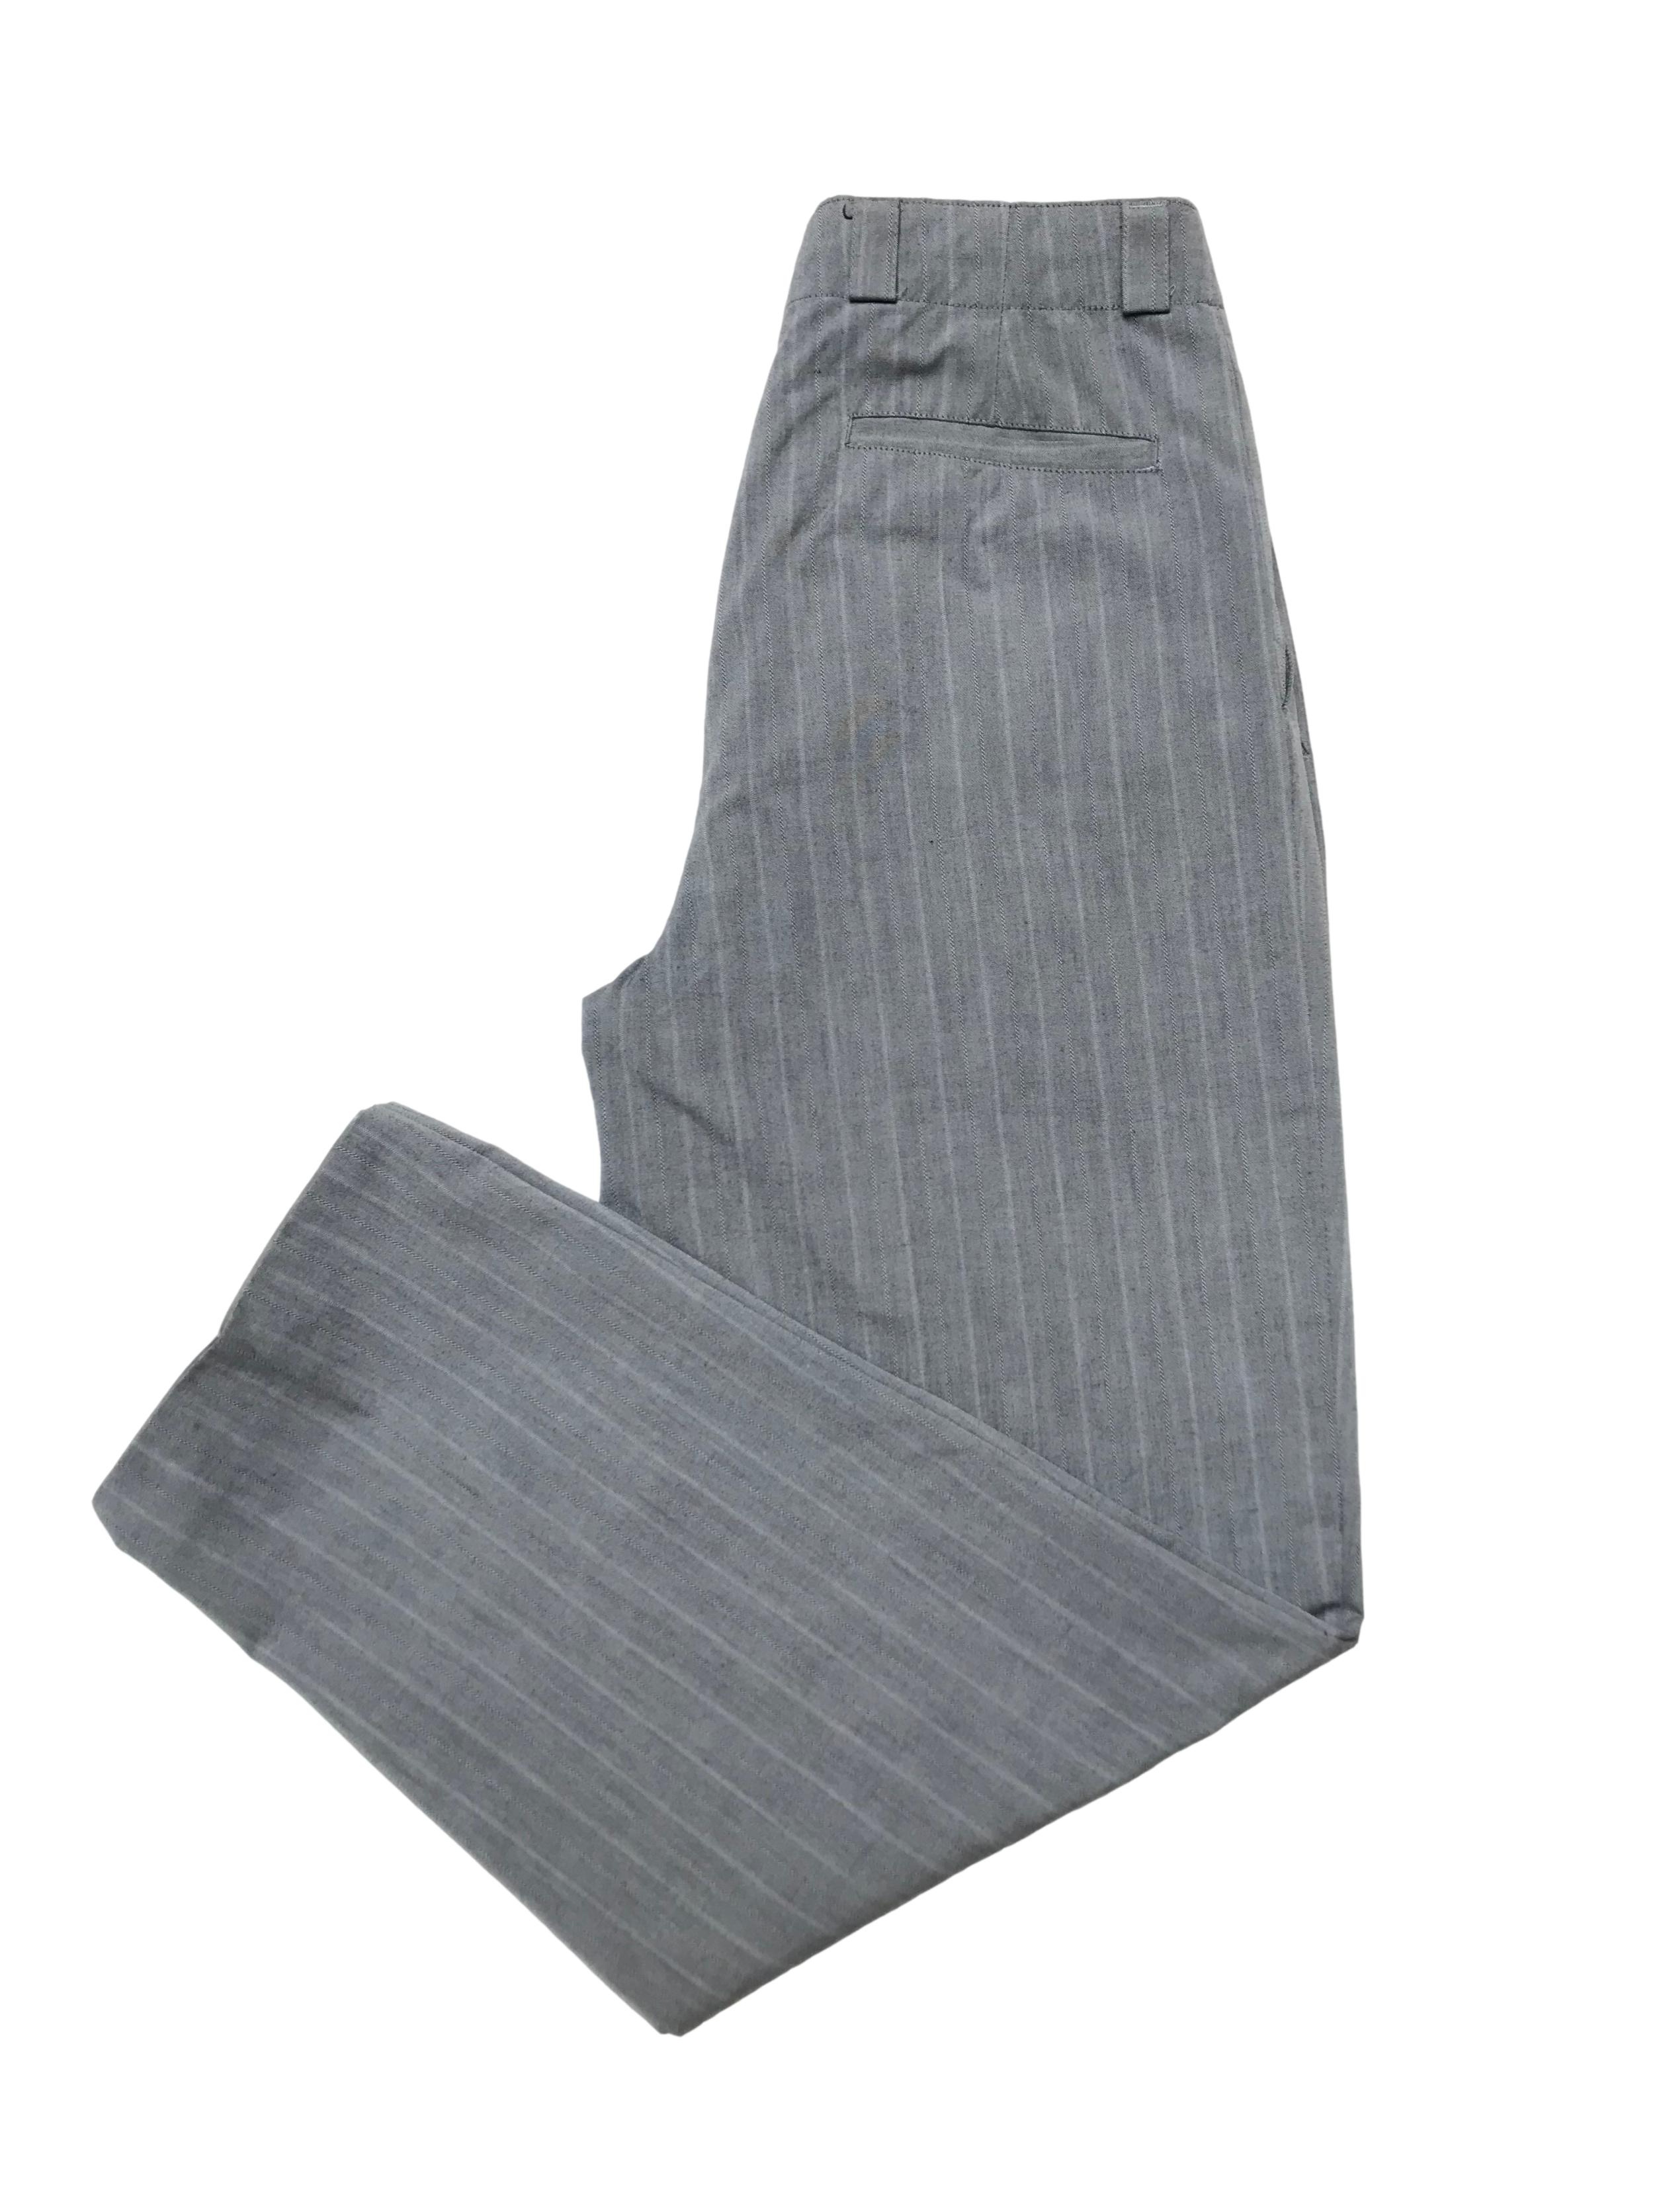 Pantalón vintage con pinzas, tipo sastre plomo con líneas al tono, cintura alta con detalle botones, tiene bolsillos laterales y uno trasero. Cintura 78 cm